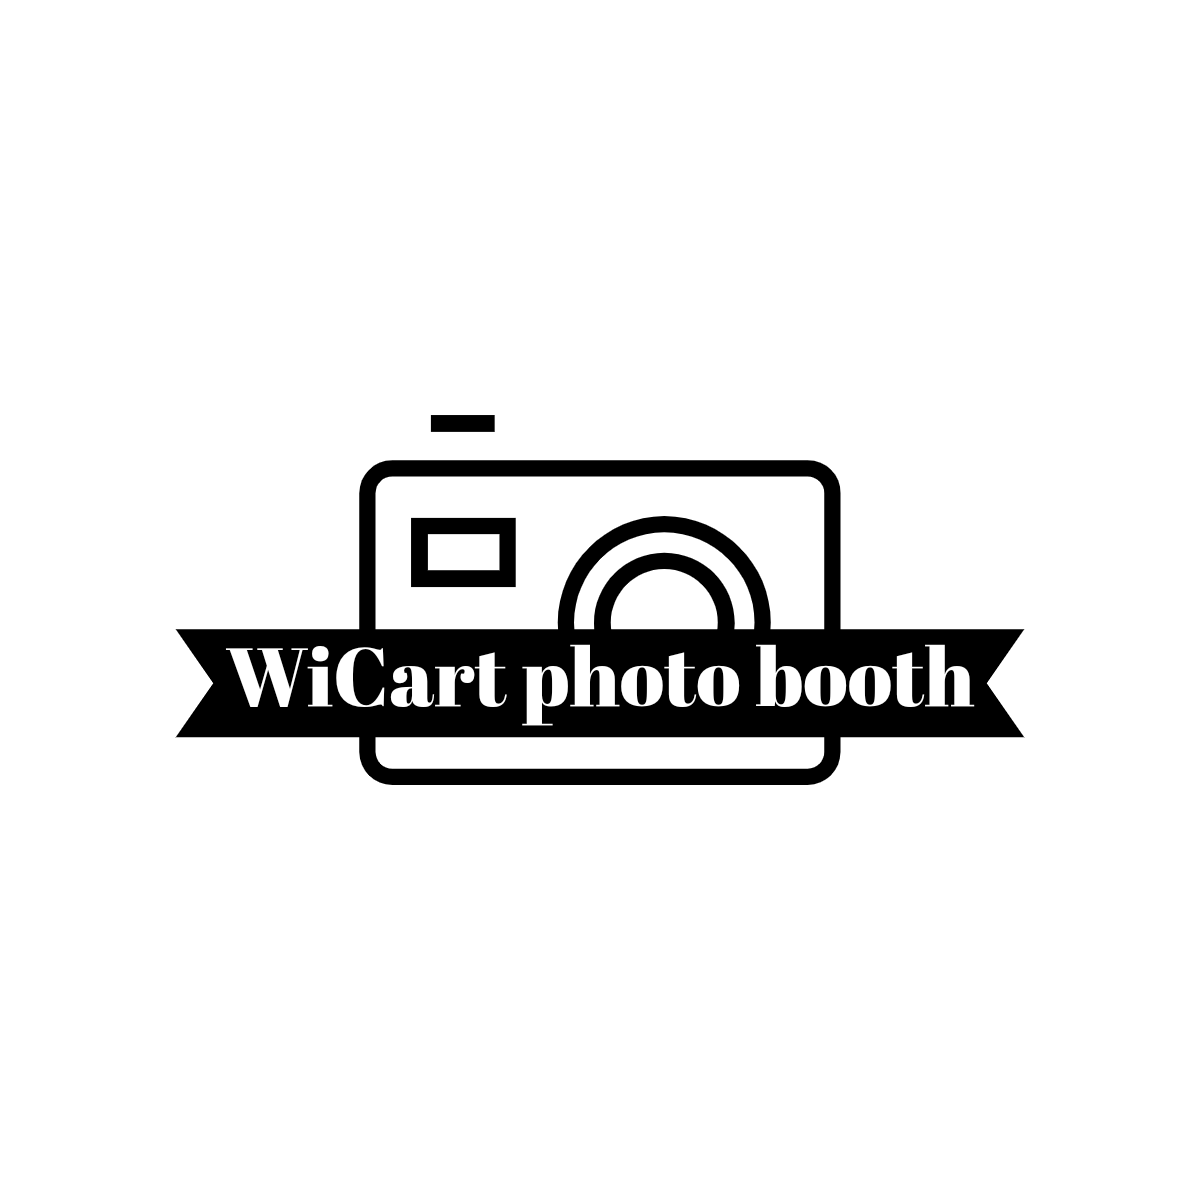 WiCart photo booth -logos